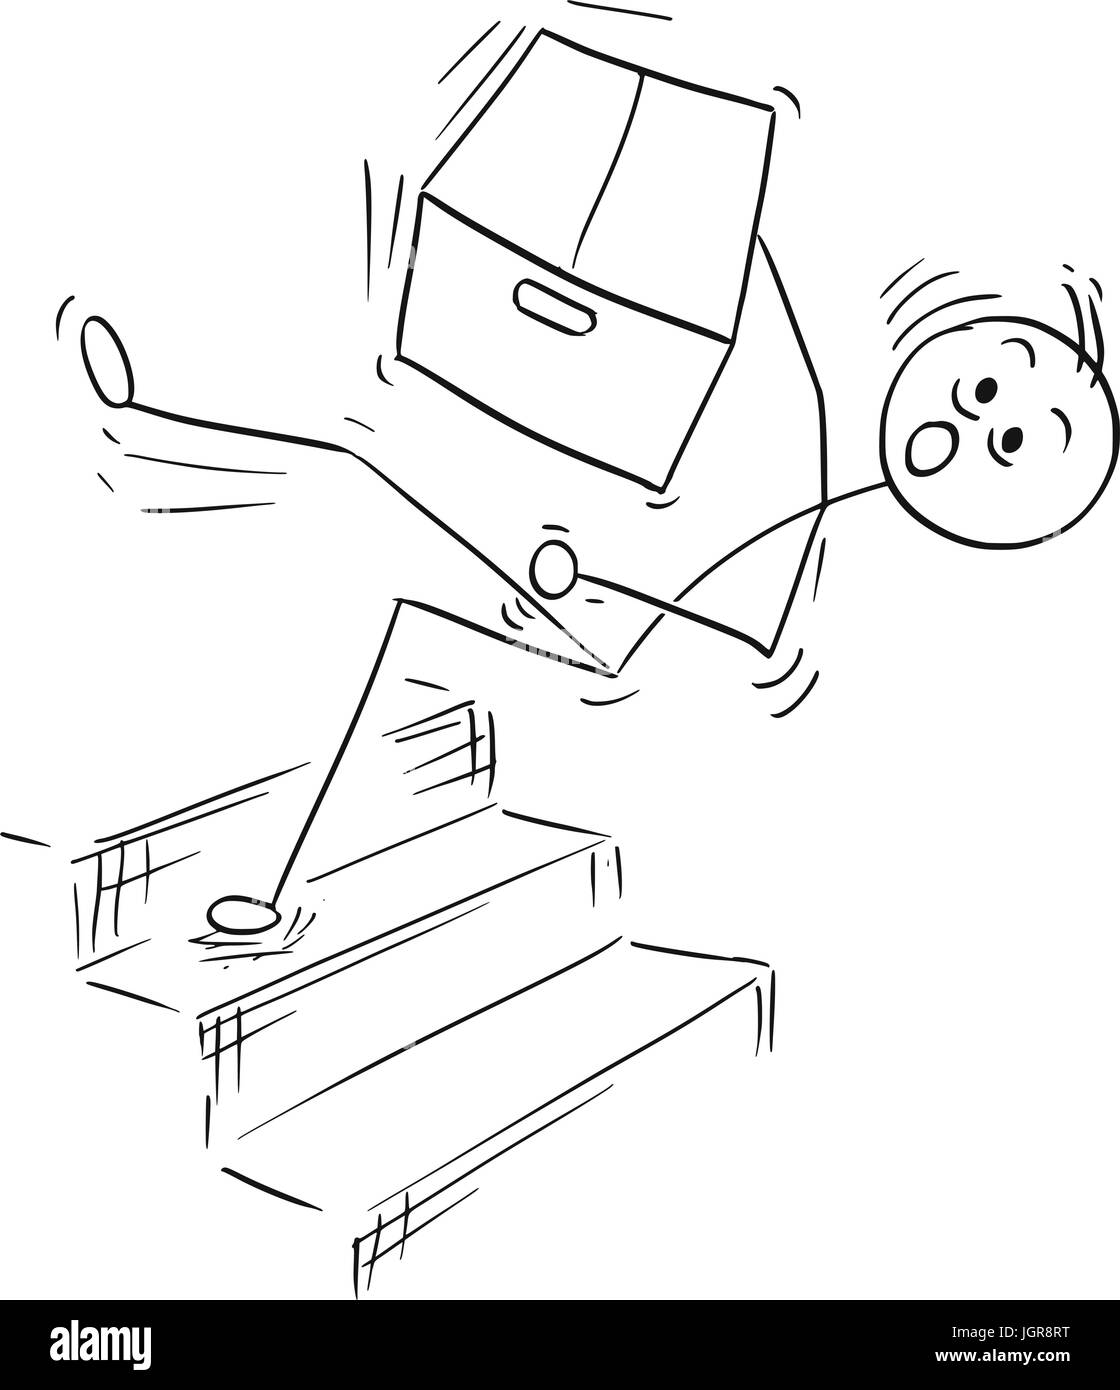 Cartoon Vector Stick Mann Stickman Zeichnung des Menschen halten große Pappschachtel und fallen vom oberen Rand der Treppe-Treppe-Treppe Stock Vektor